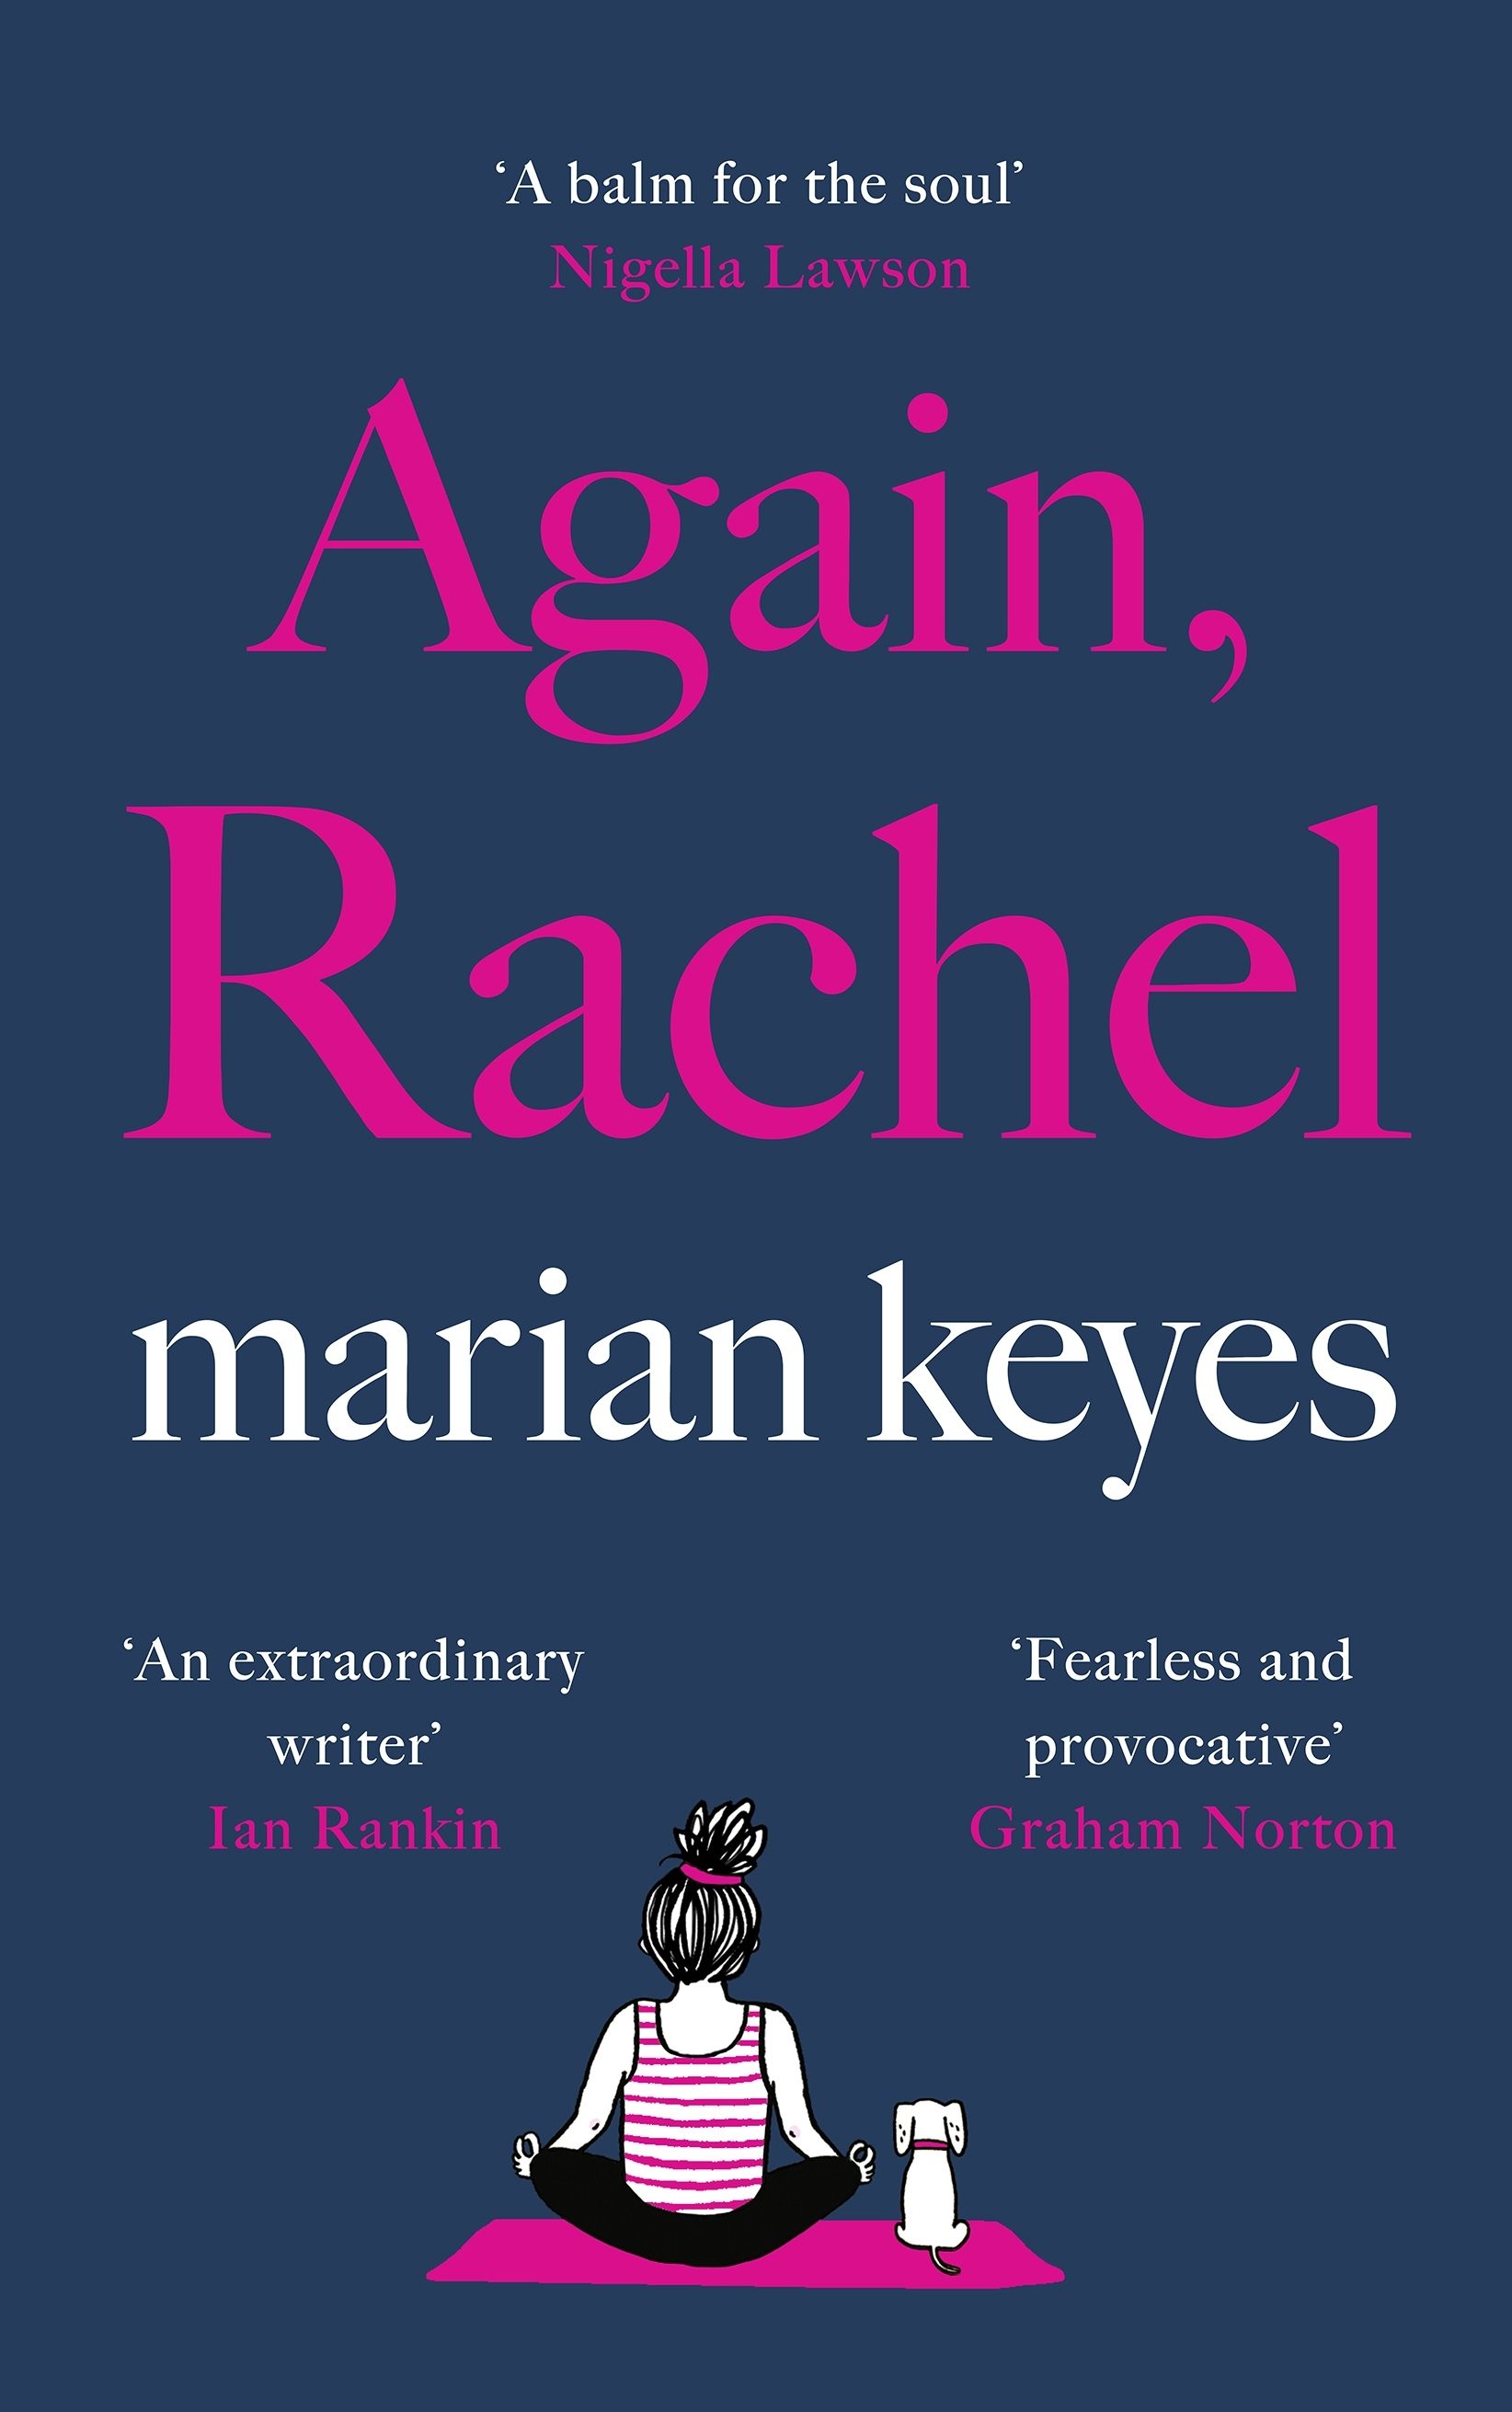 Again, Rachel : The unmissable new hilarious, heart-breaking novel from the global bestseller